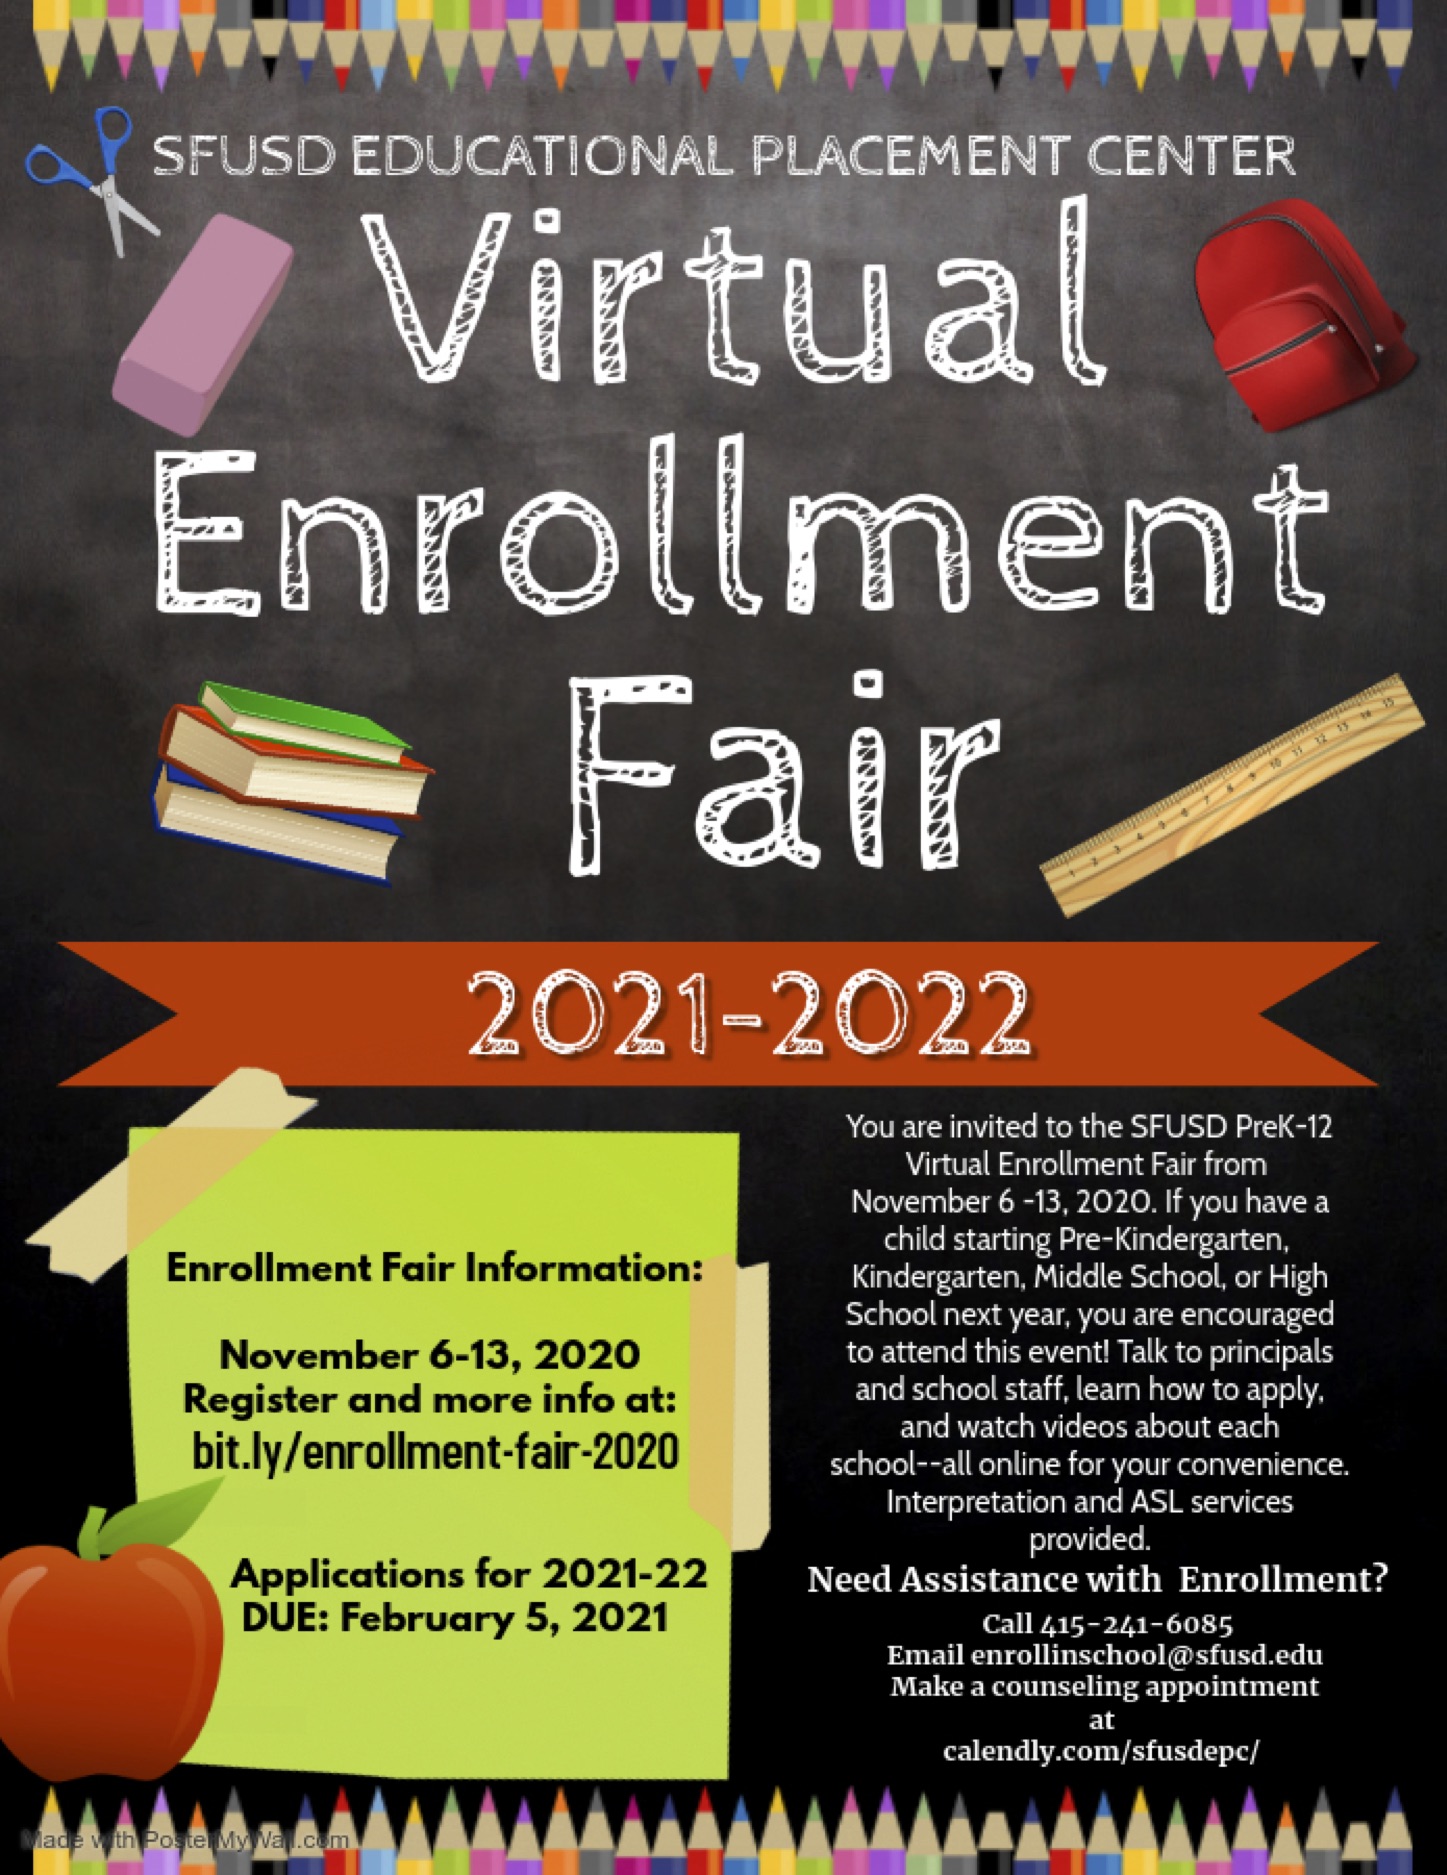 a flyer detailing the Virtual Enrollment Fair 2020 - 2021. 